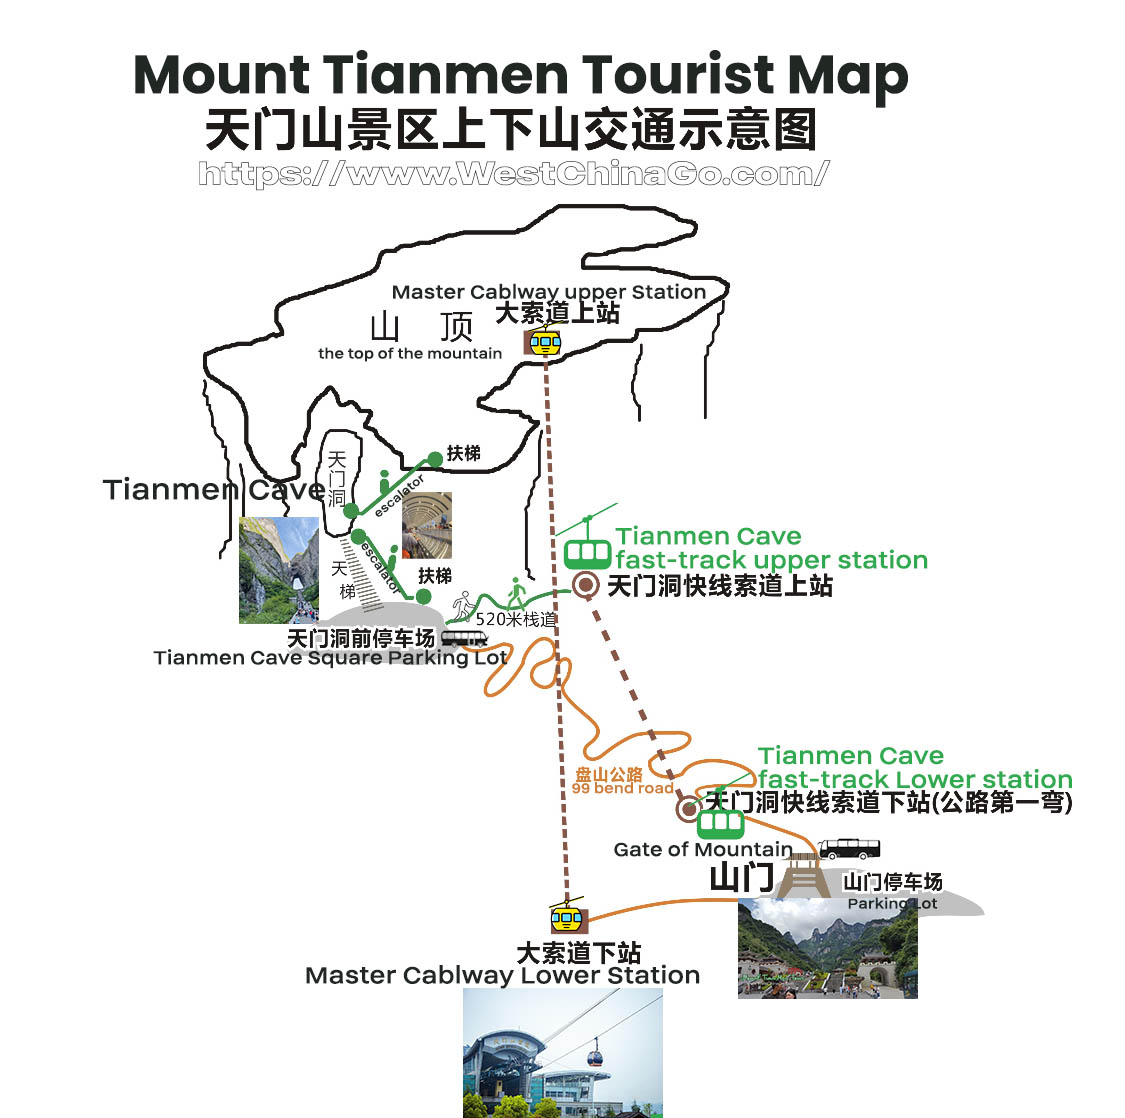 Zhangjiajie Mount Tianmen Tourist Map